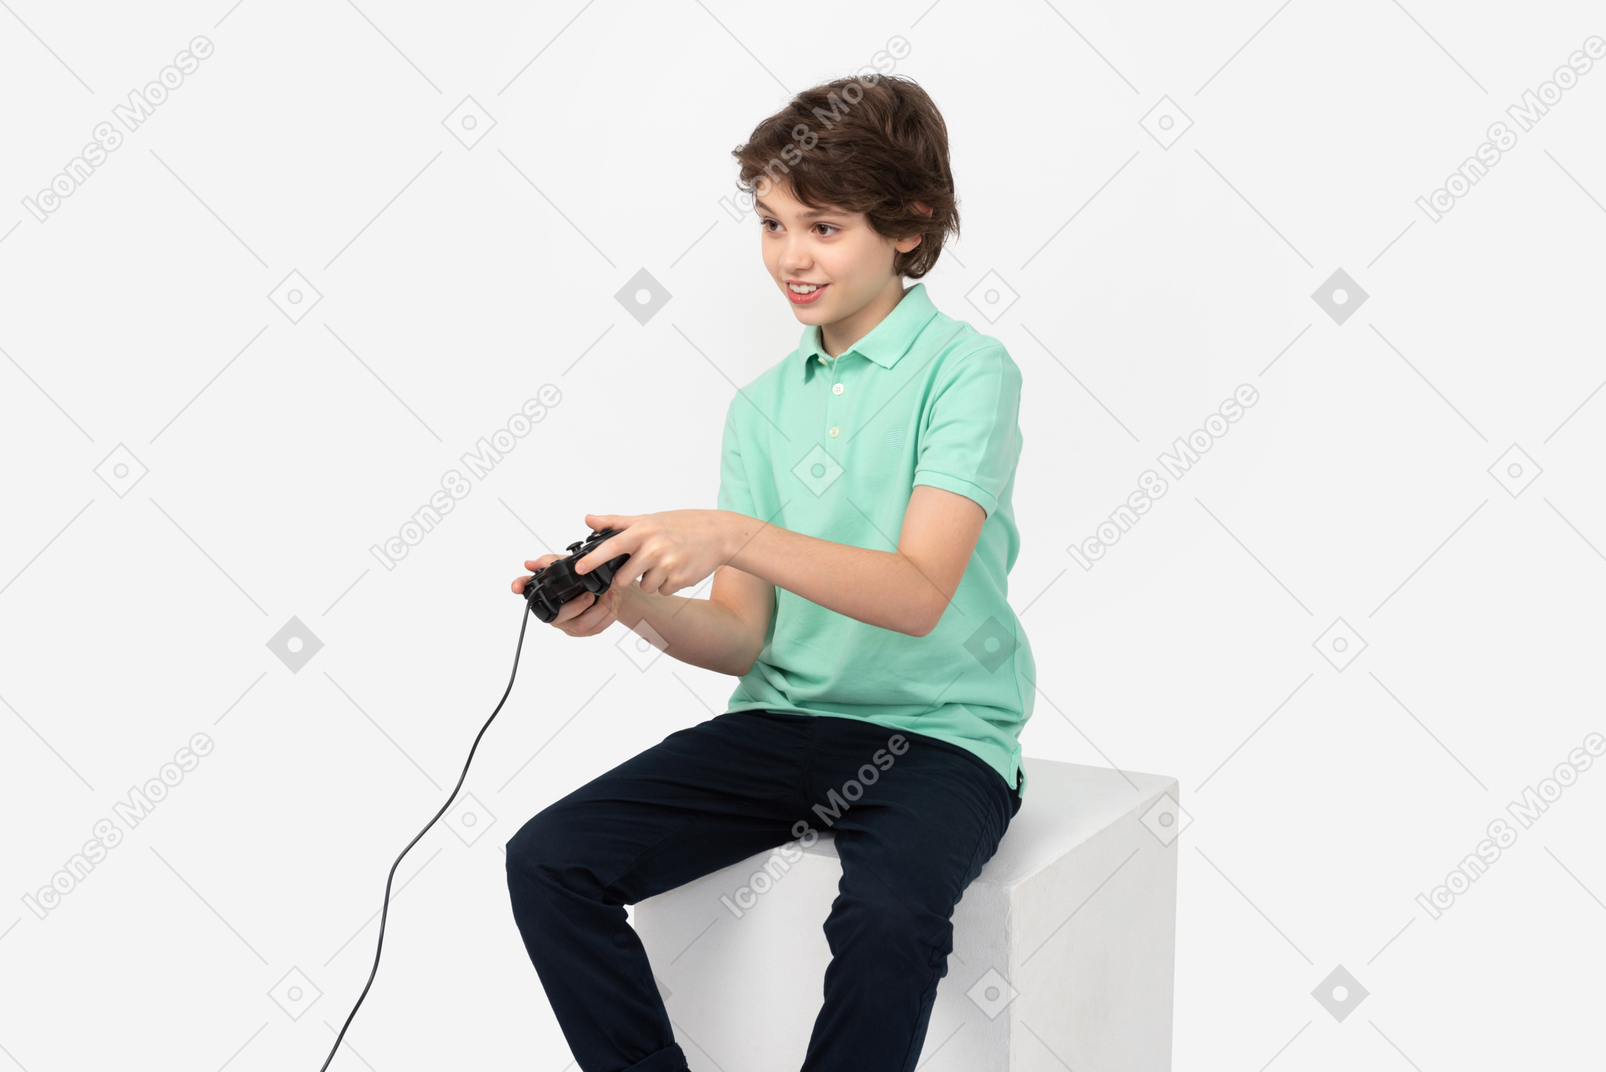 ビデオゲームをする 10 代の少年